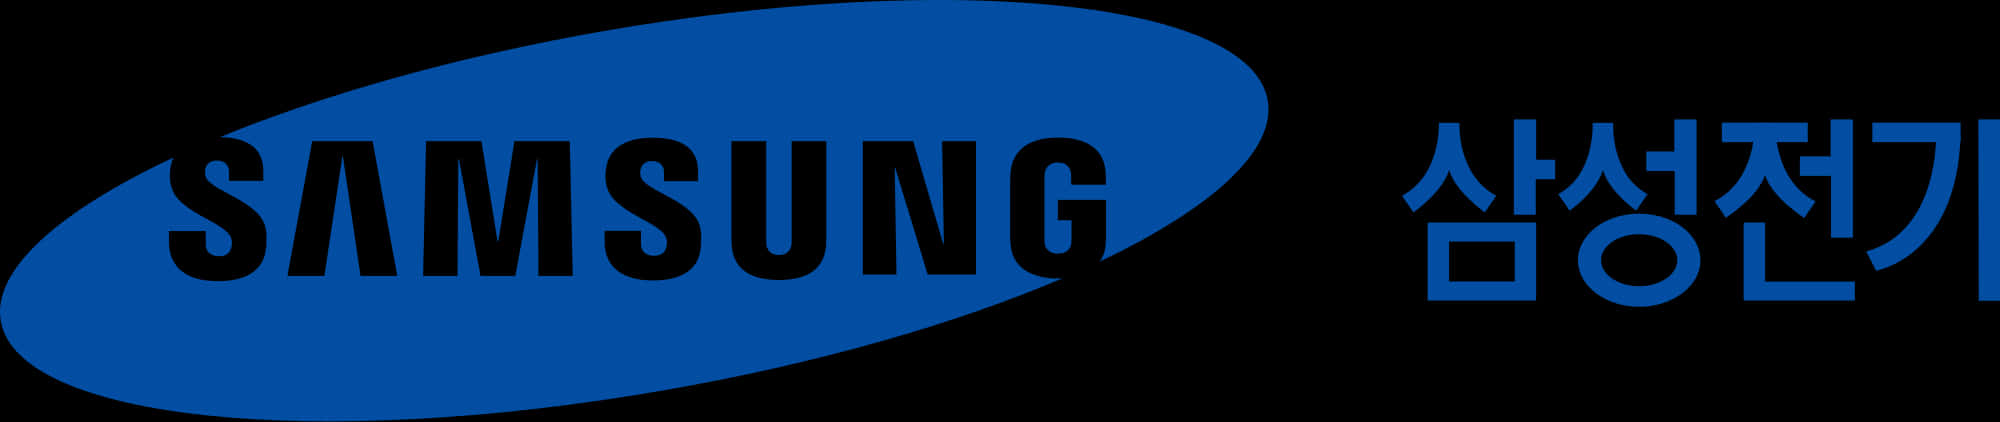 Samsung Logo Blue Ellipse PNG image